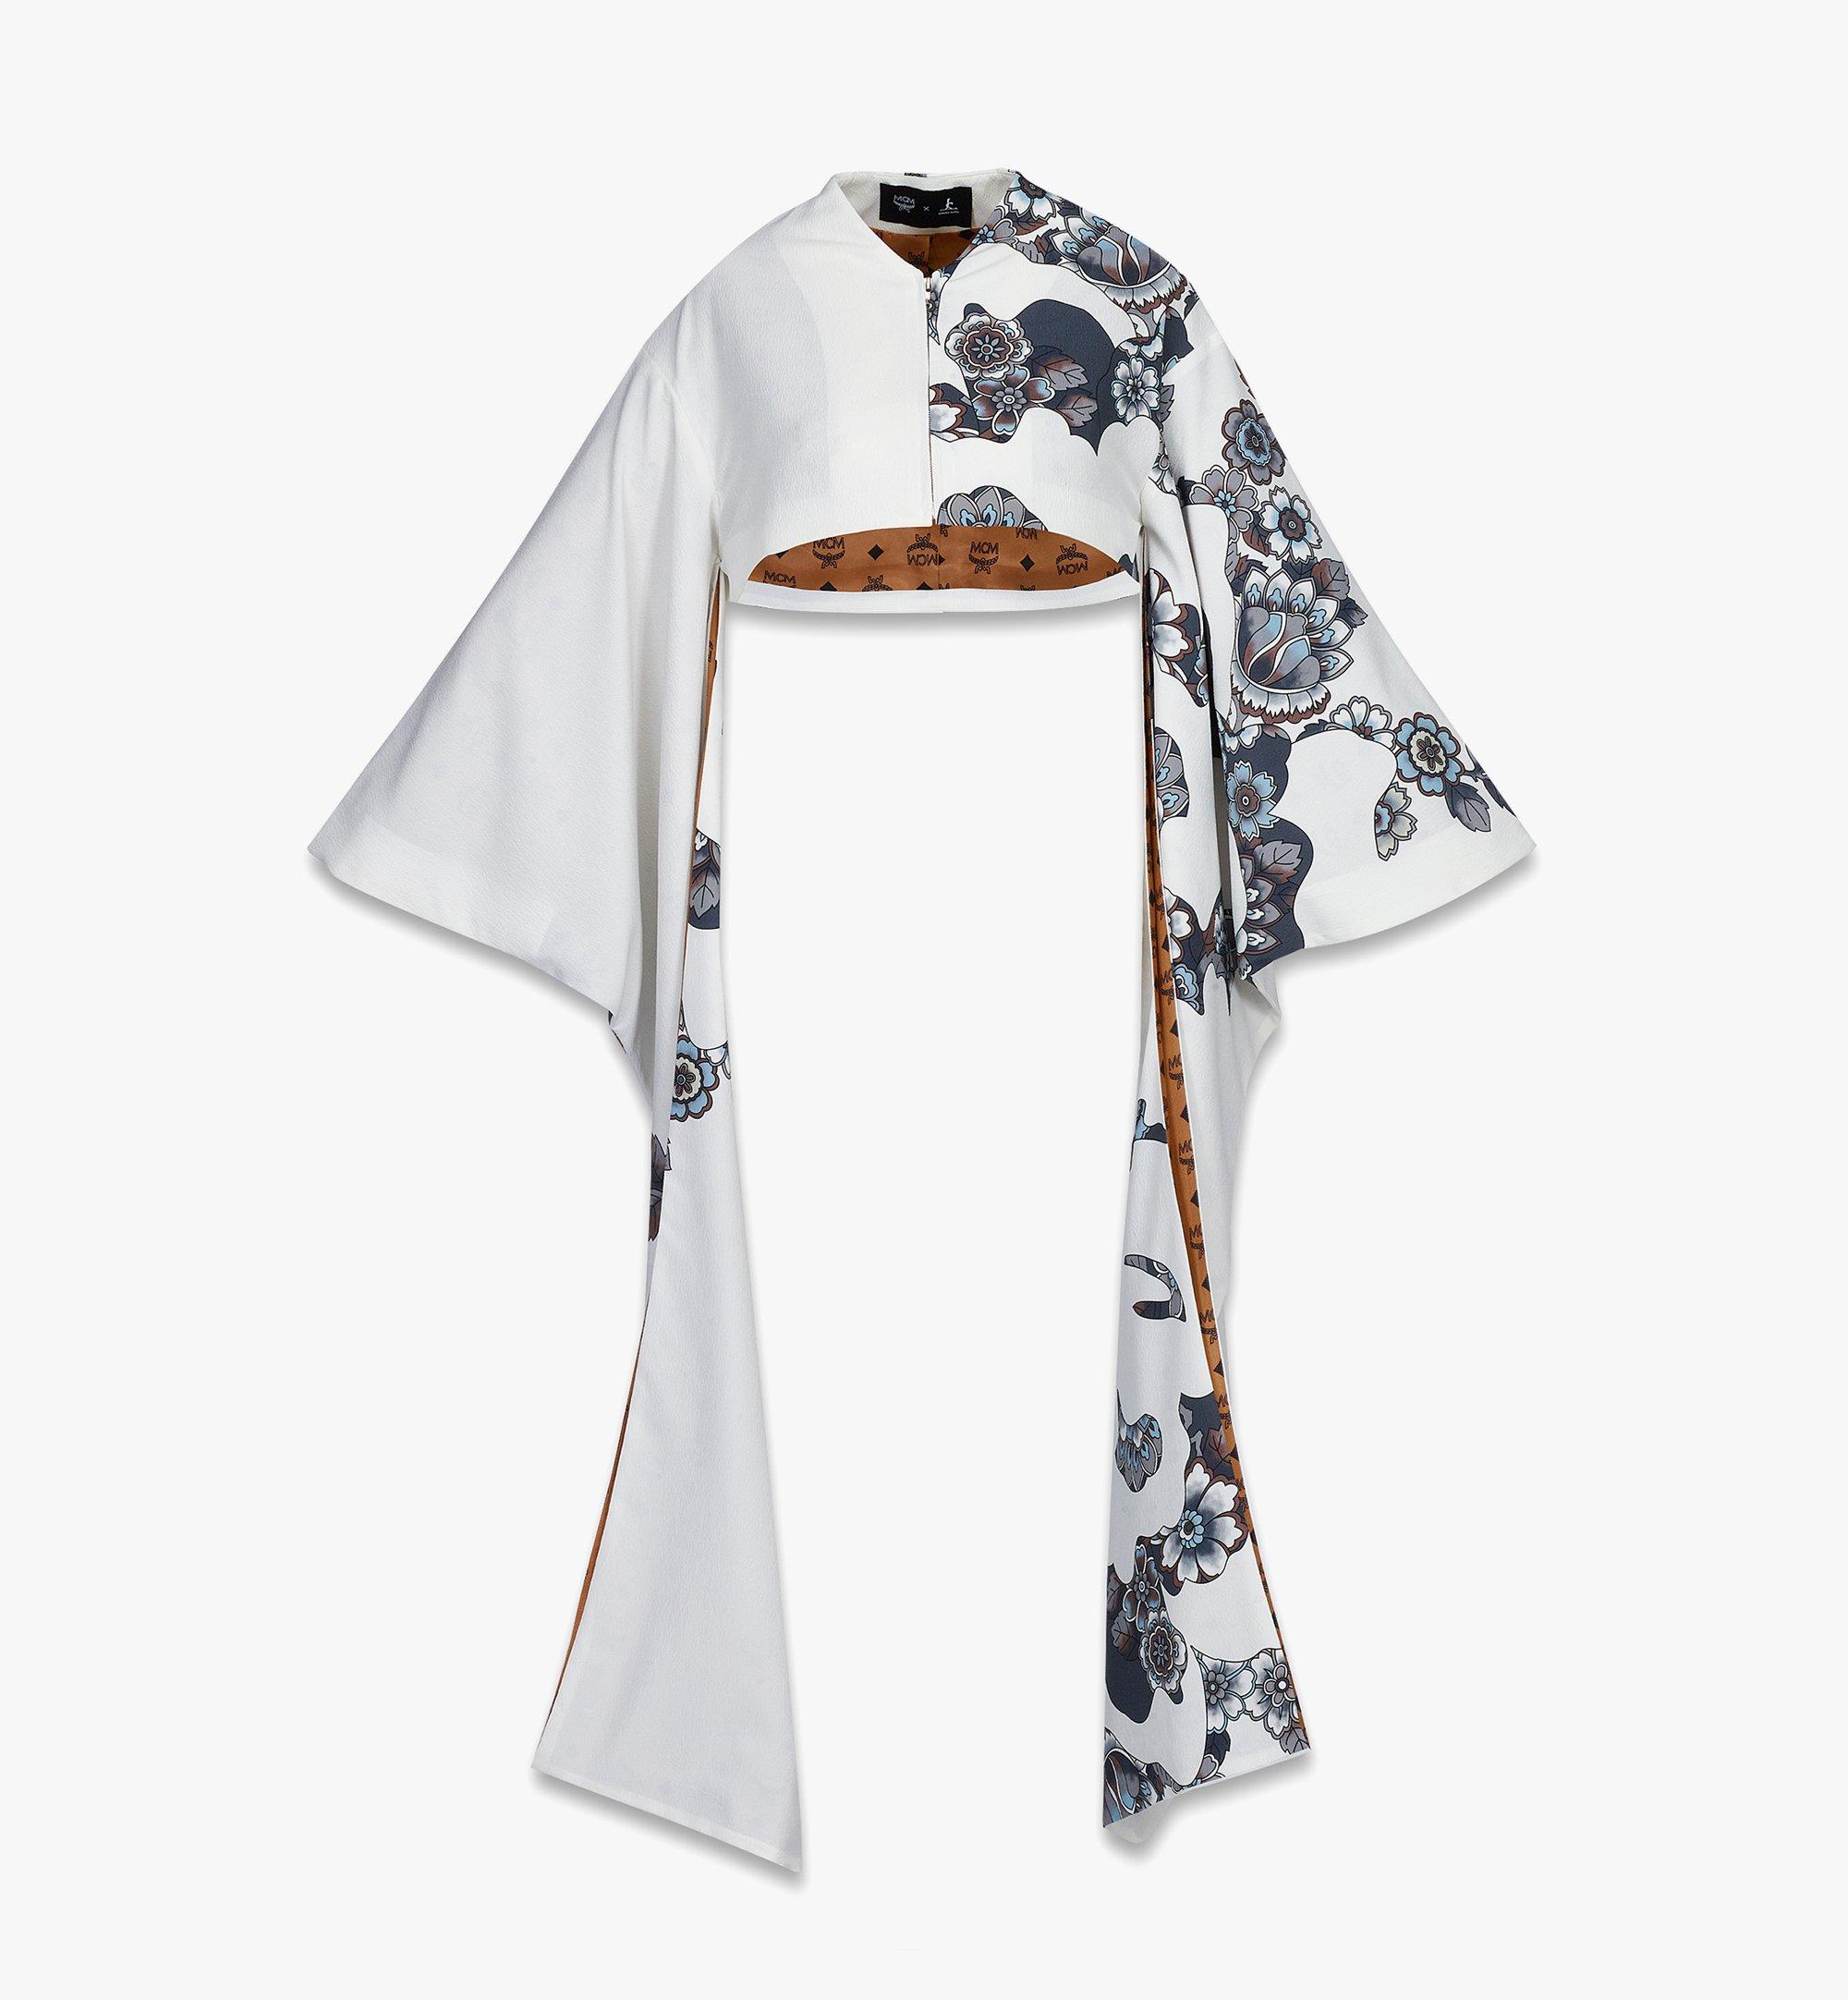 Modern kimono designer Jotaro Saito launches new brand of